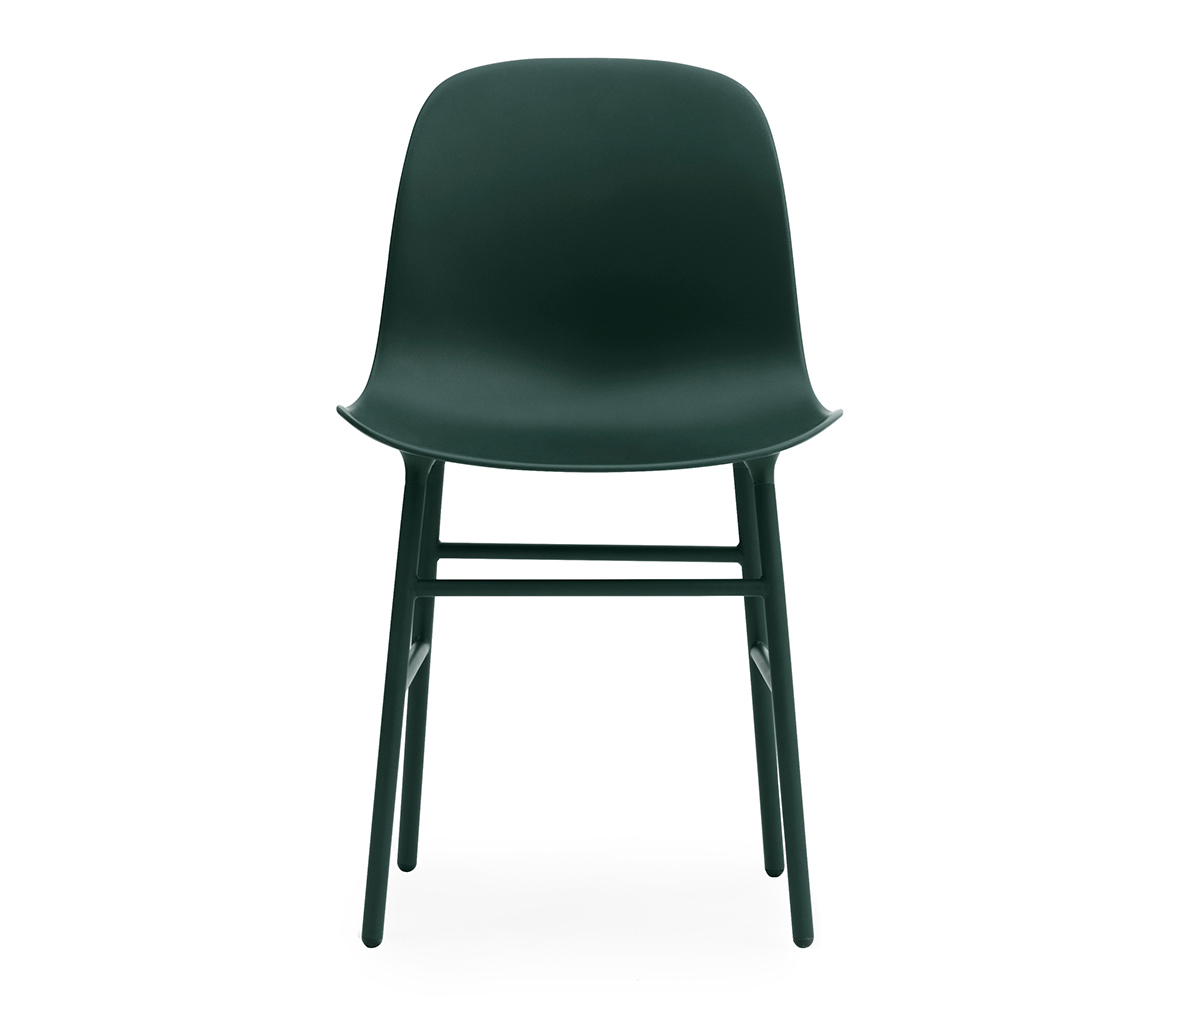 Form-tuoli